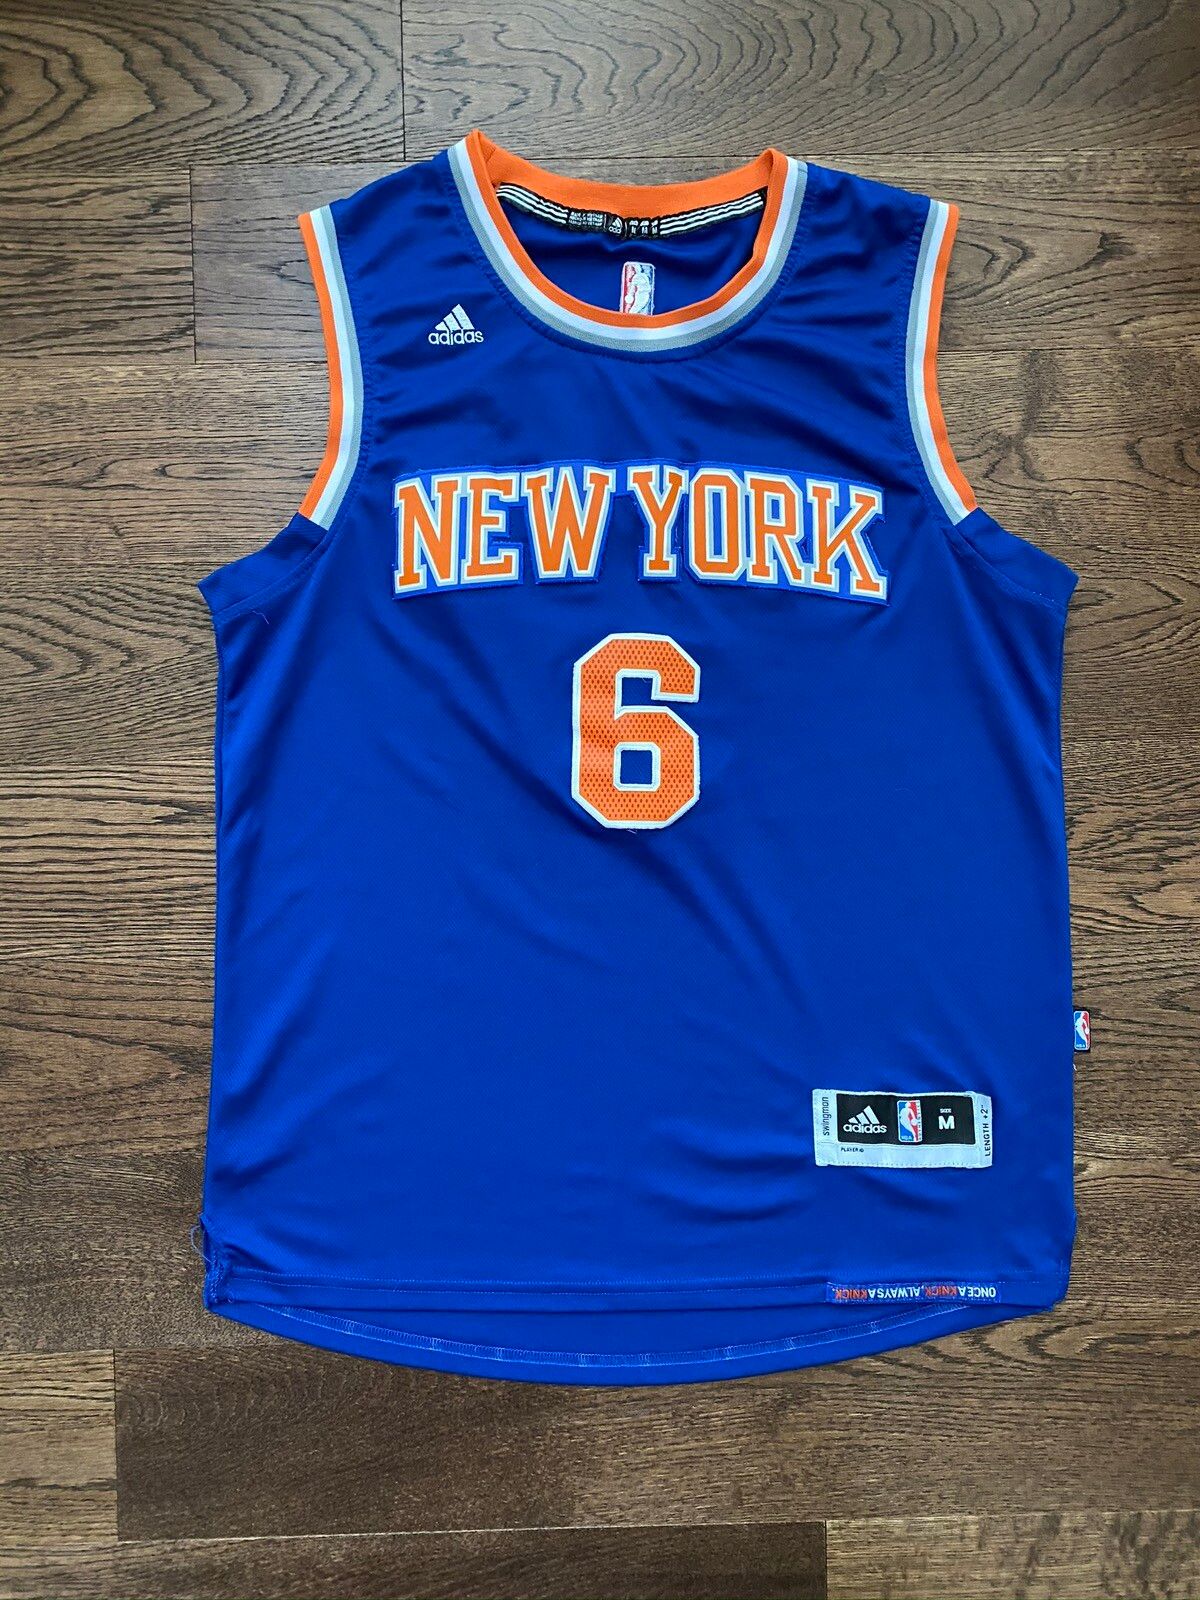 Adidas Adidas New York Knicks Kristaps Porzingis Jersey | Grailed